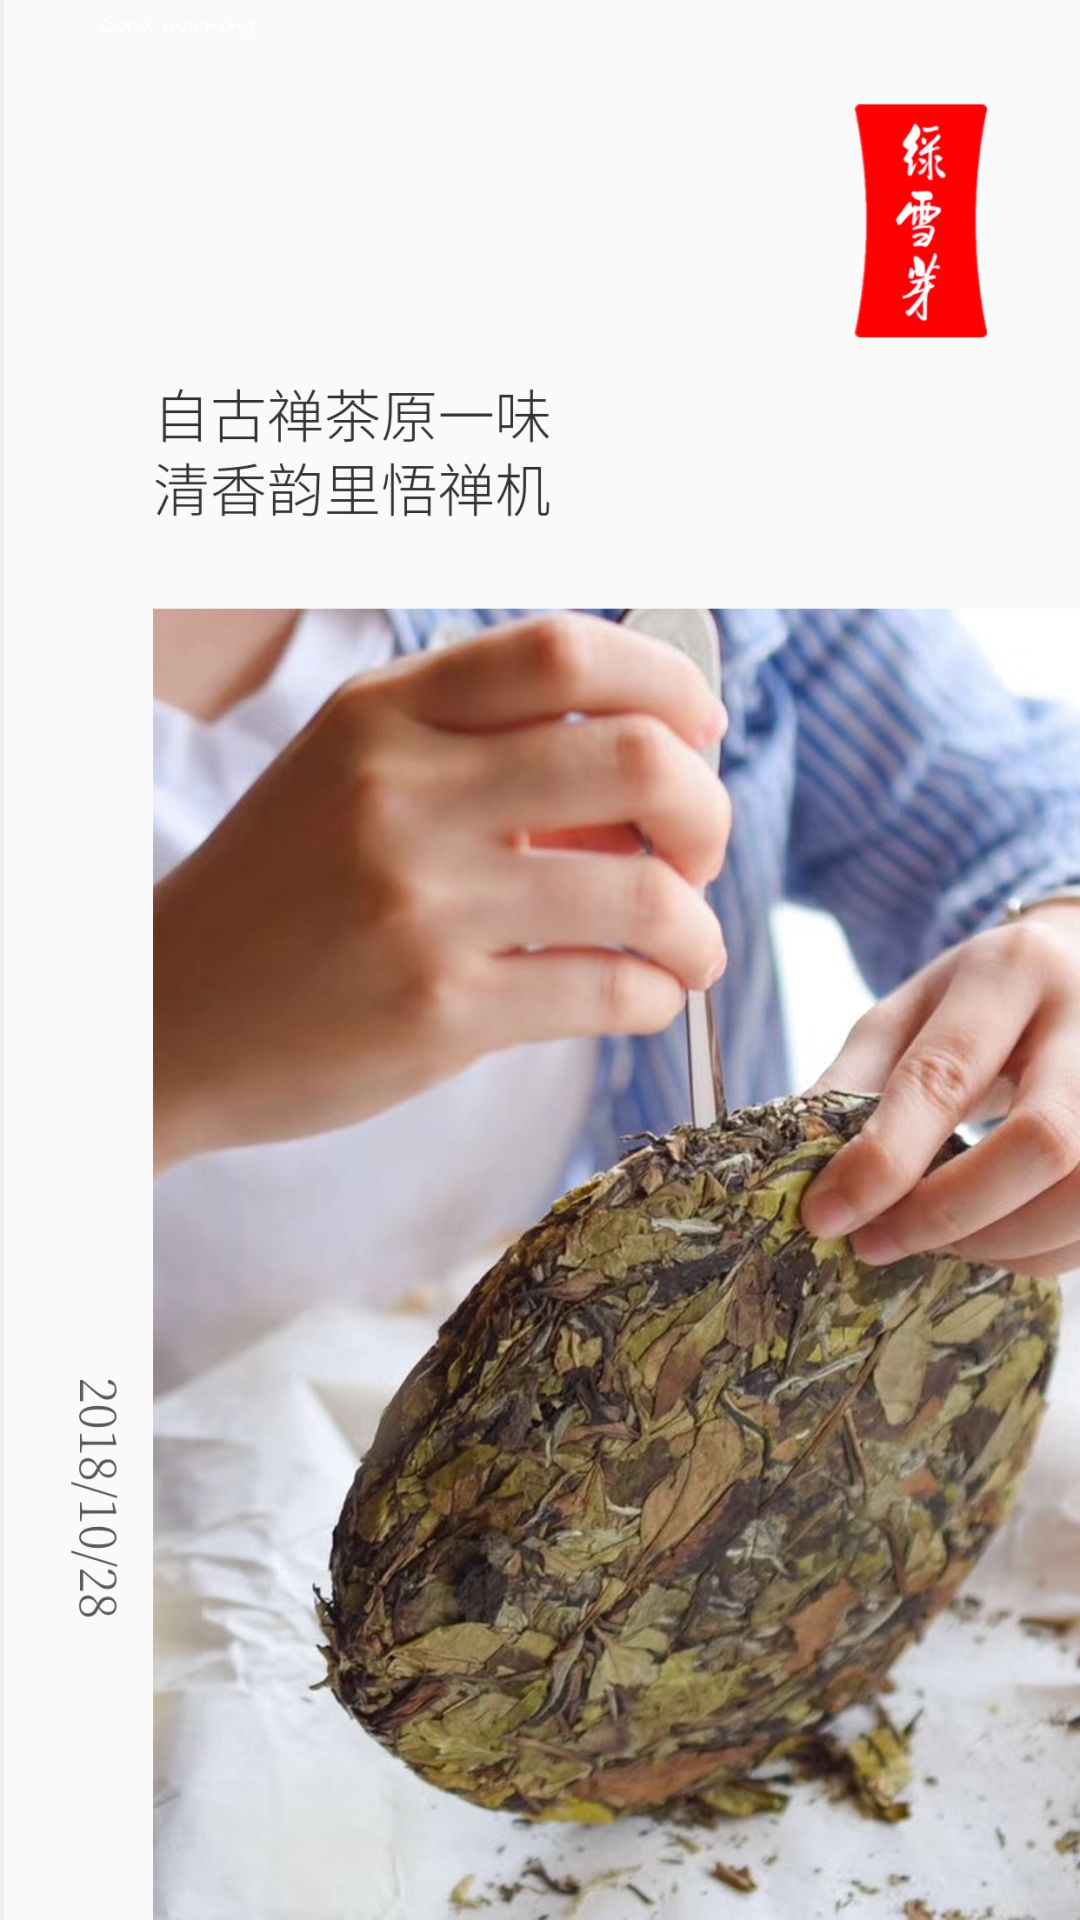 绿雪芽 金芽老寿眉 砖茶 一代老广人的记忆 2014年500克福鼎白茶-淘宝网